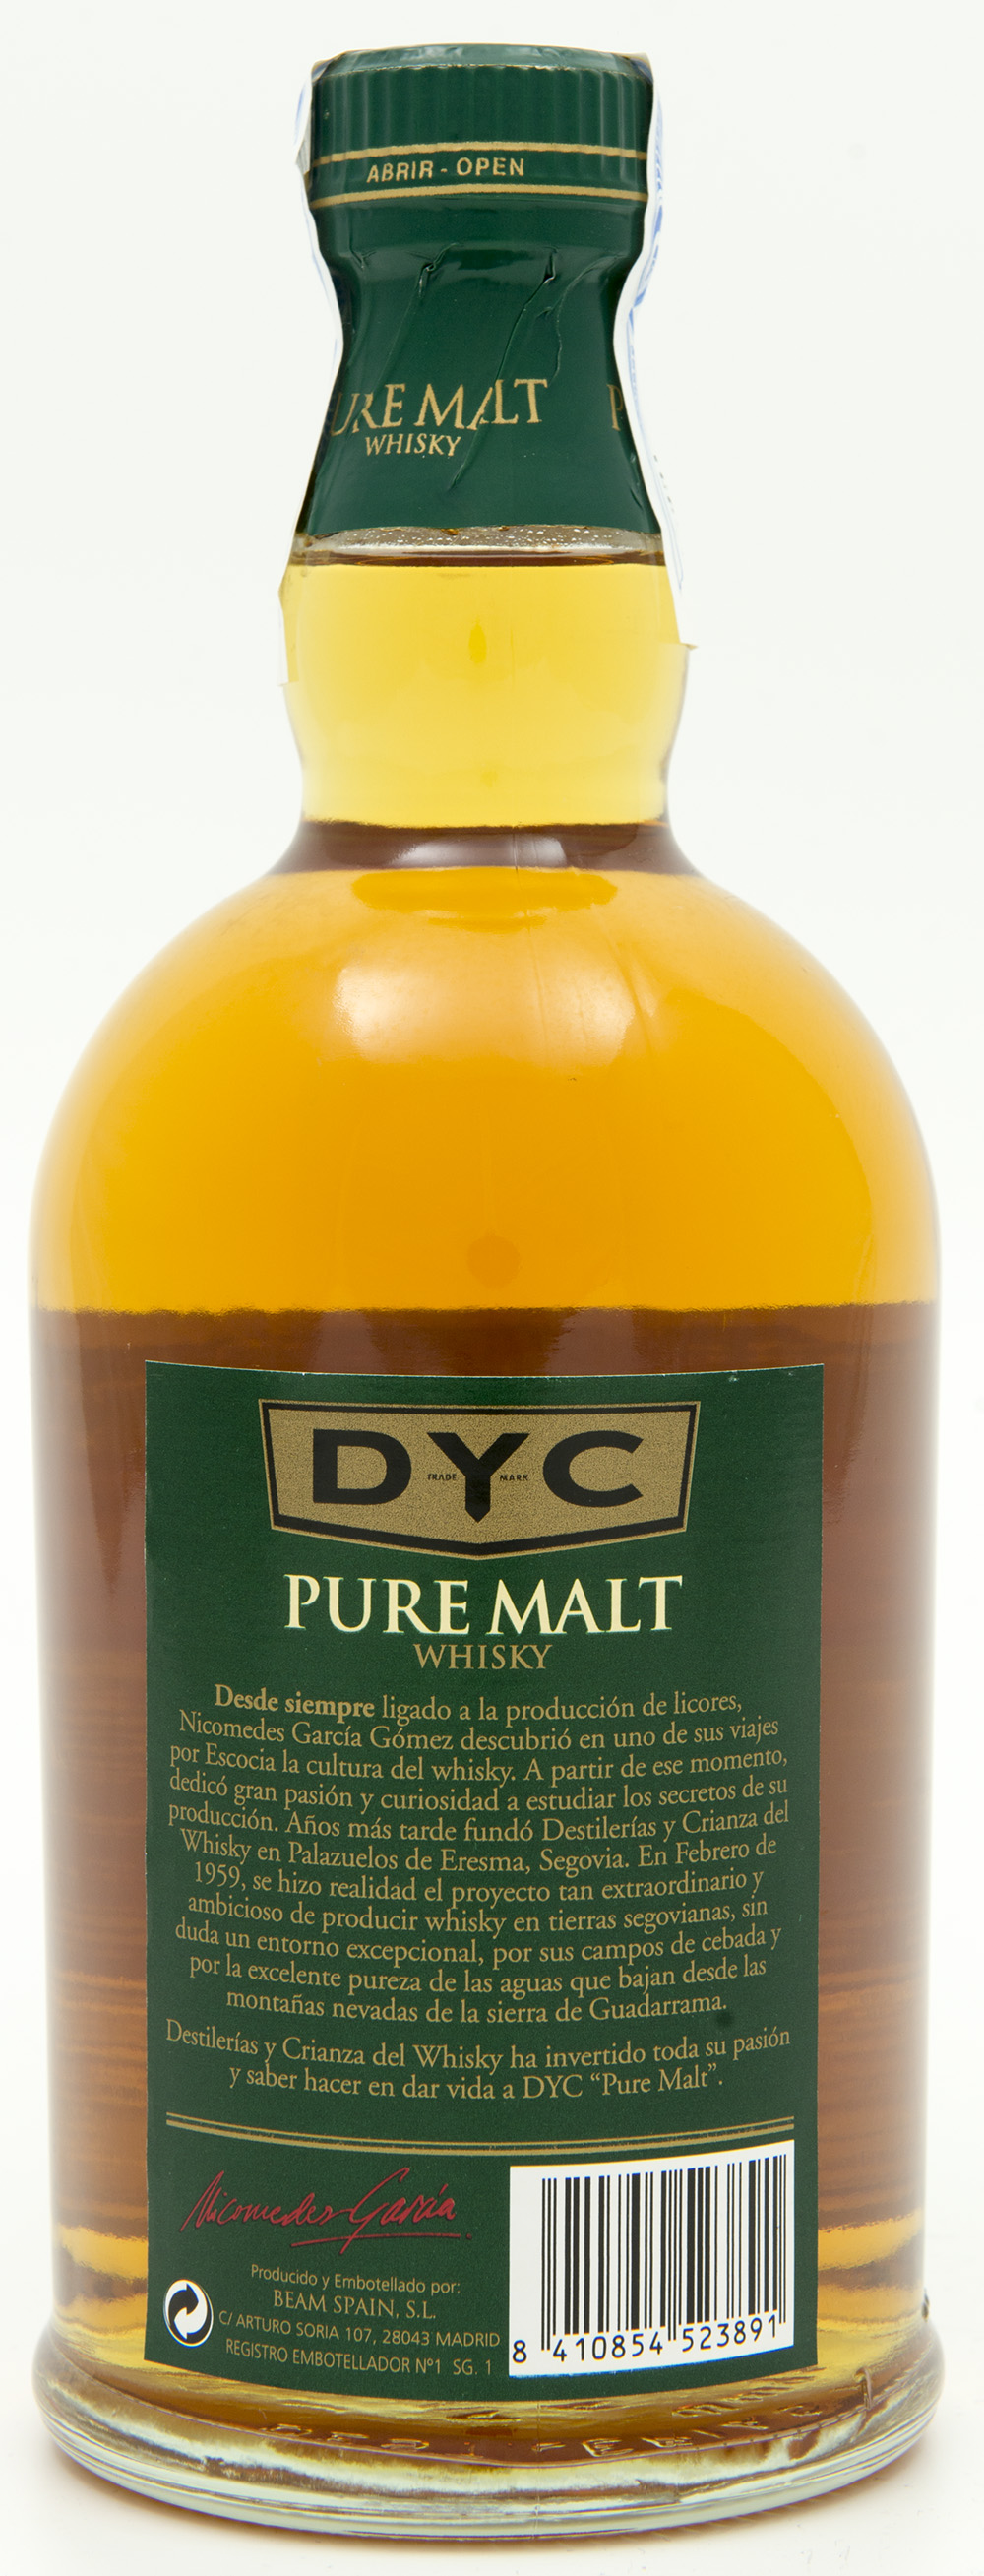 Billede: DSC_6194 - DYC Pure Malt - bottle back.jpg